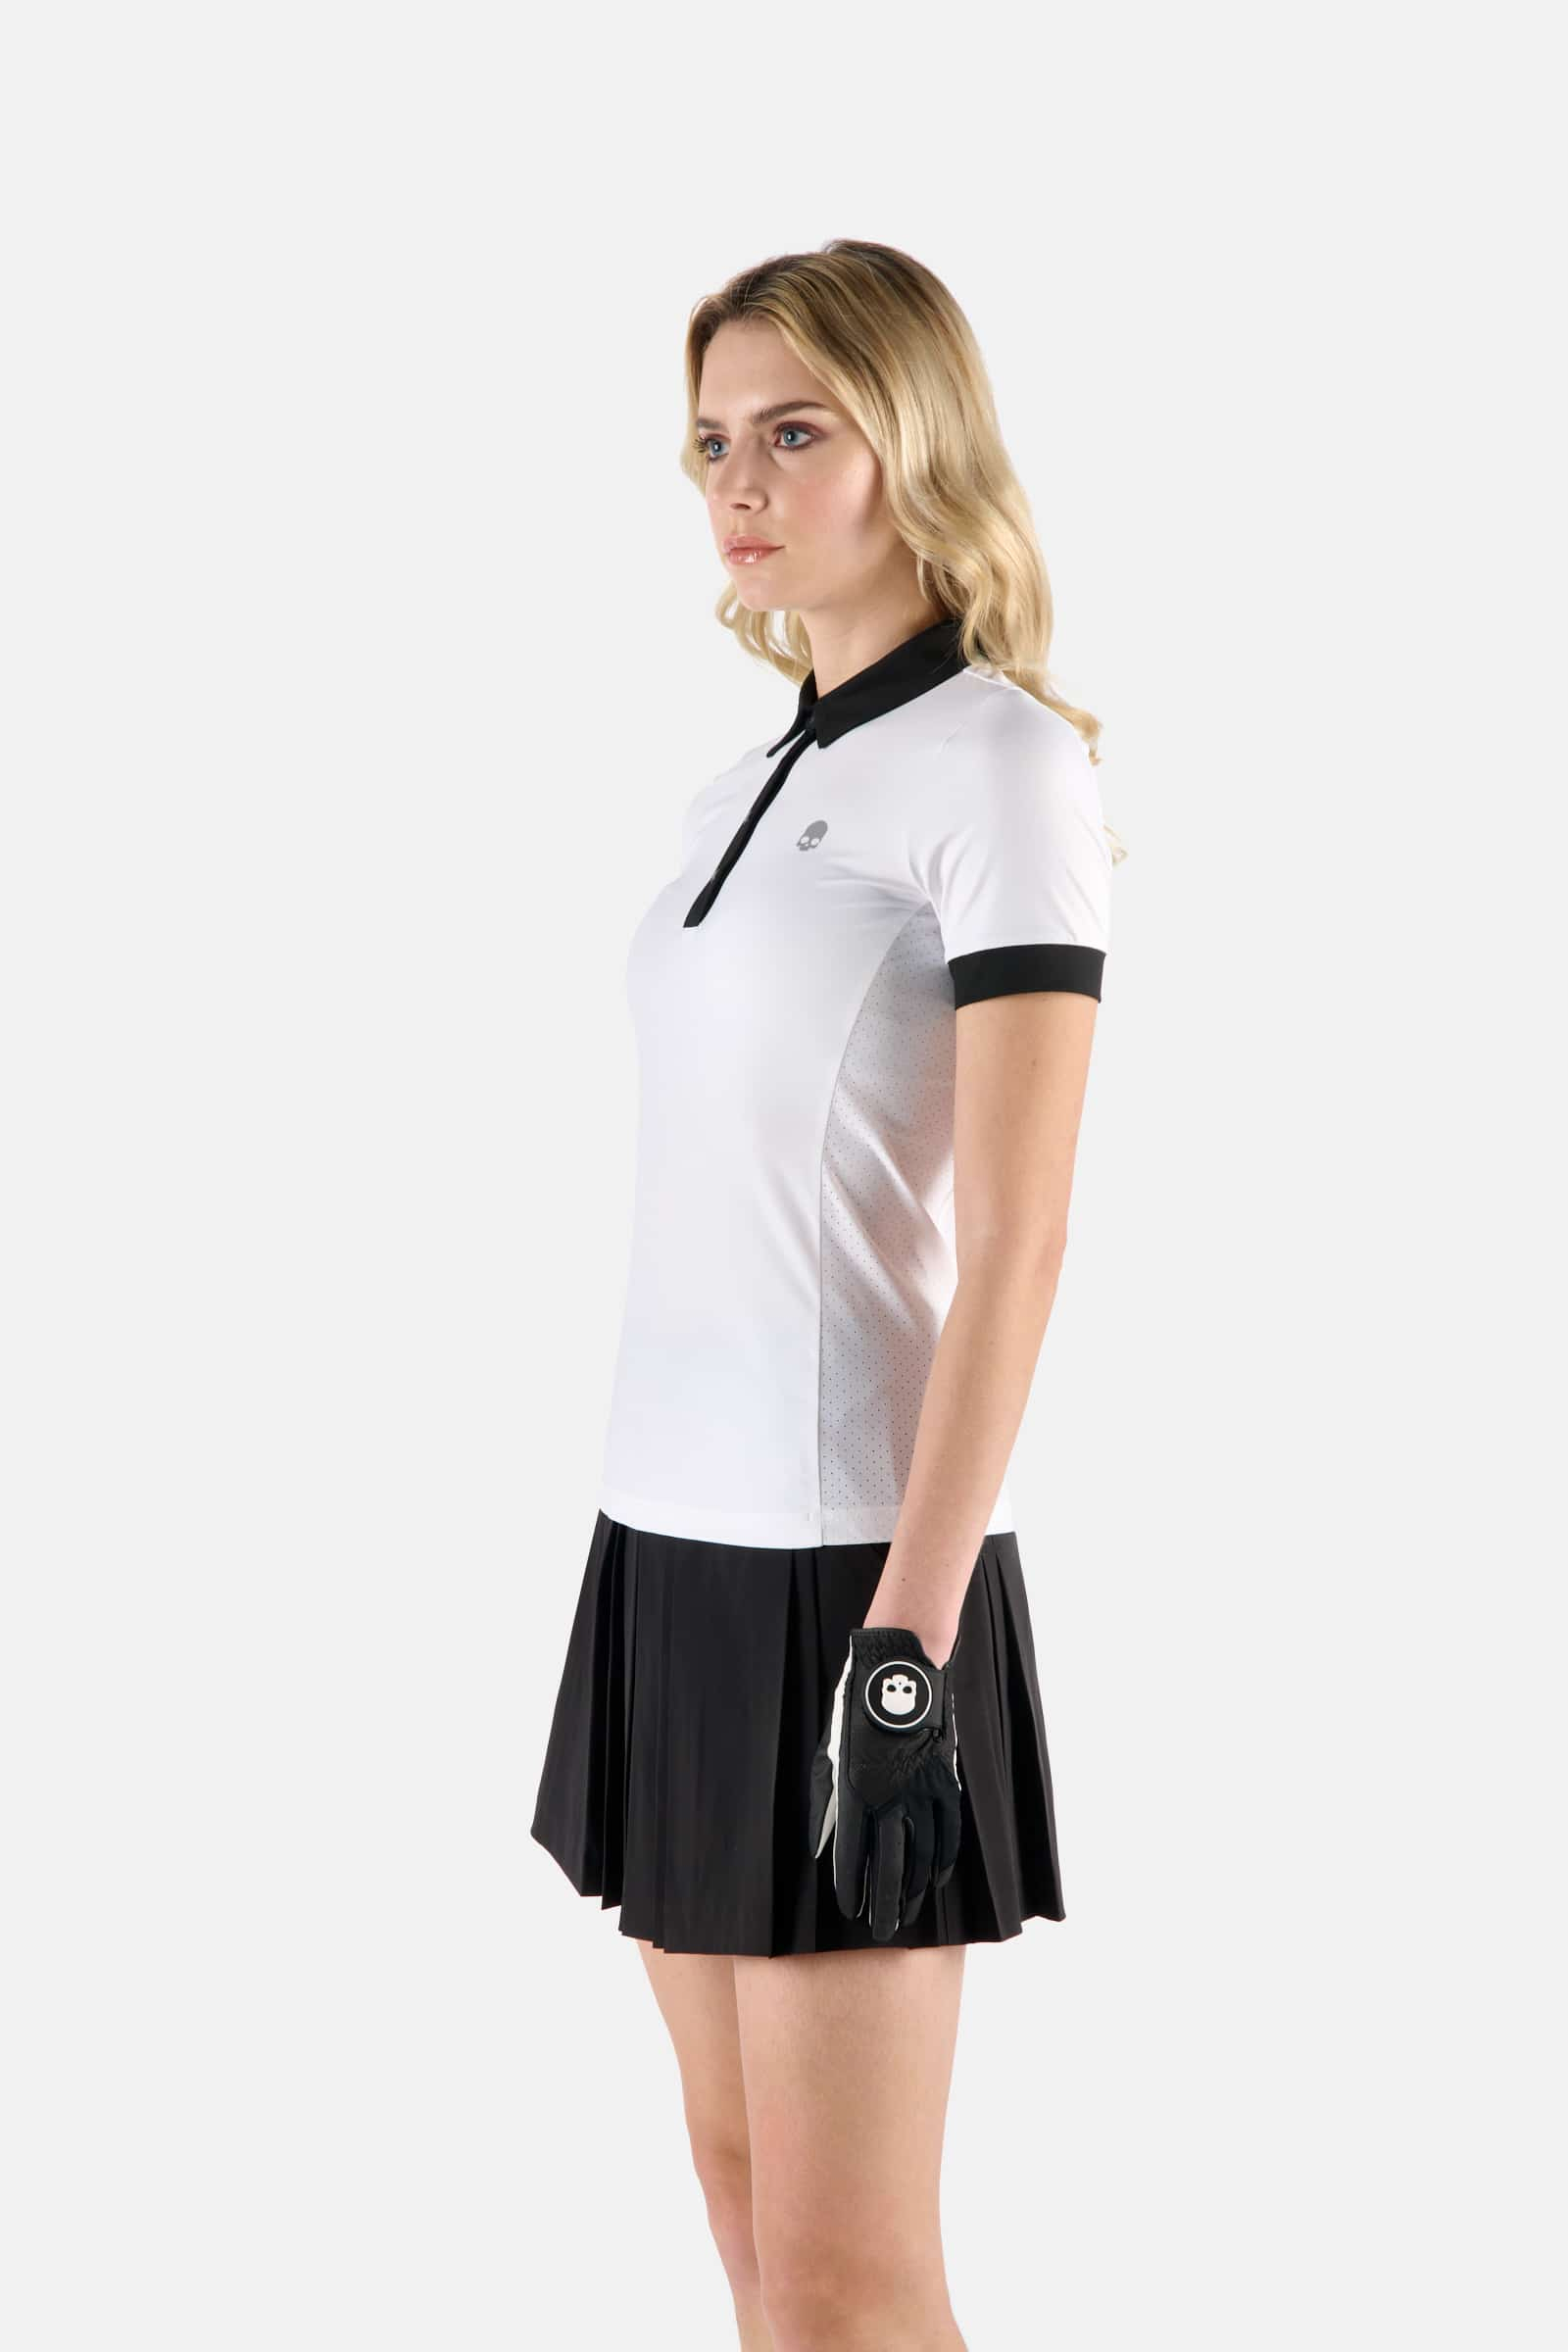 POLO SS - WHITE,BLACK - Hydrogen - Luxury Sportwear